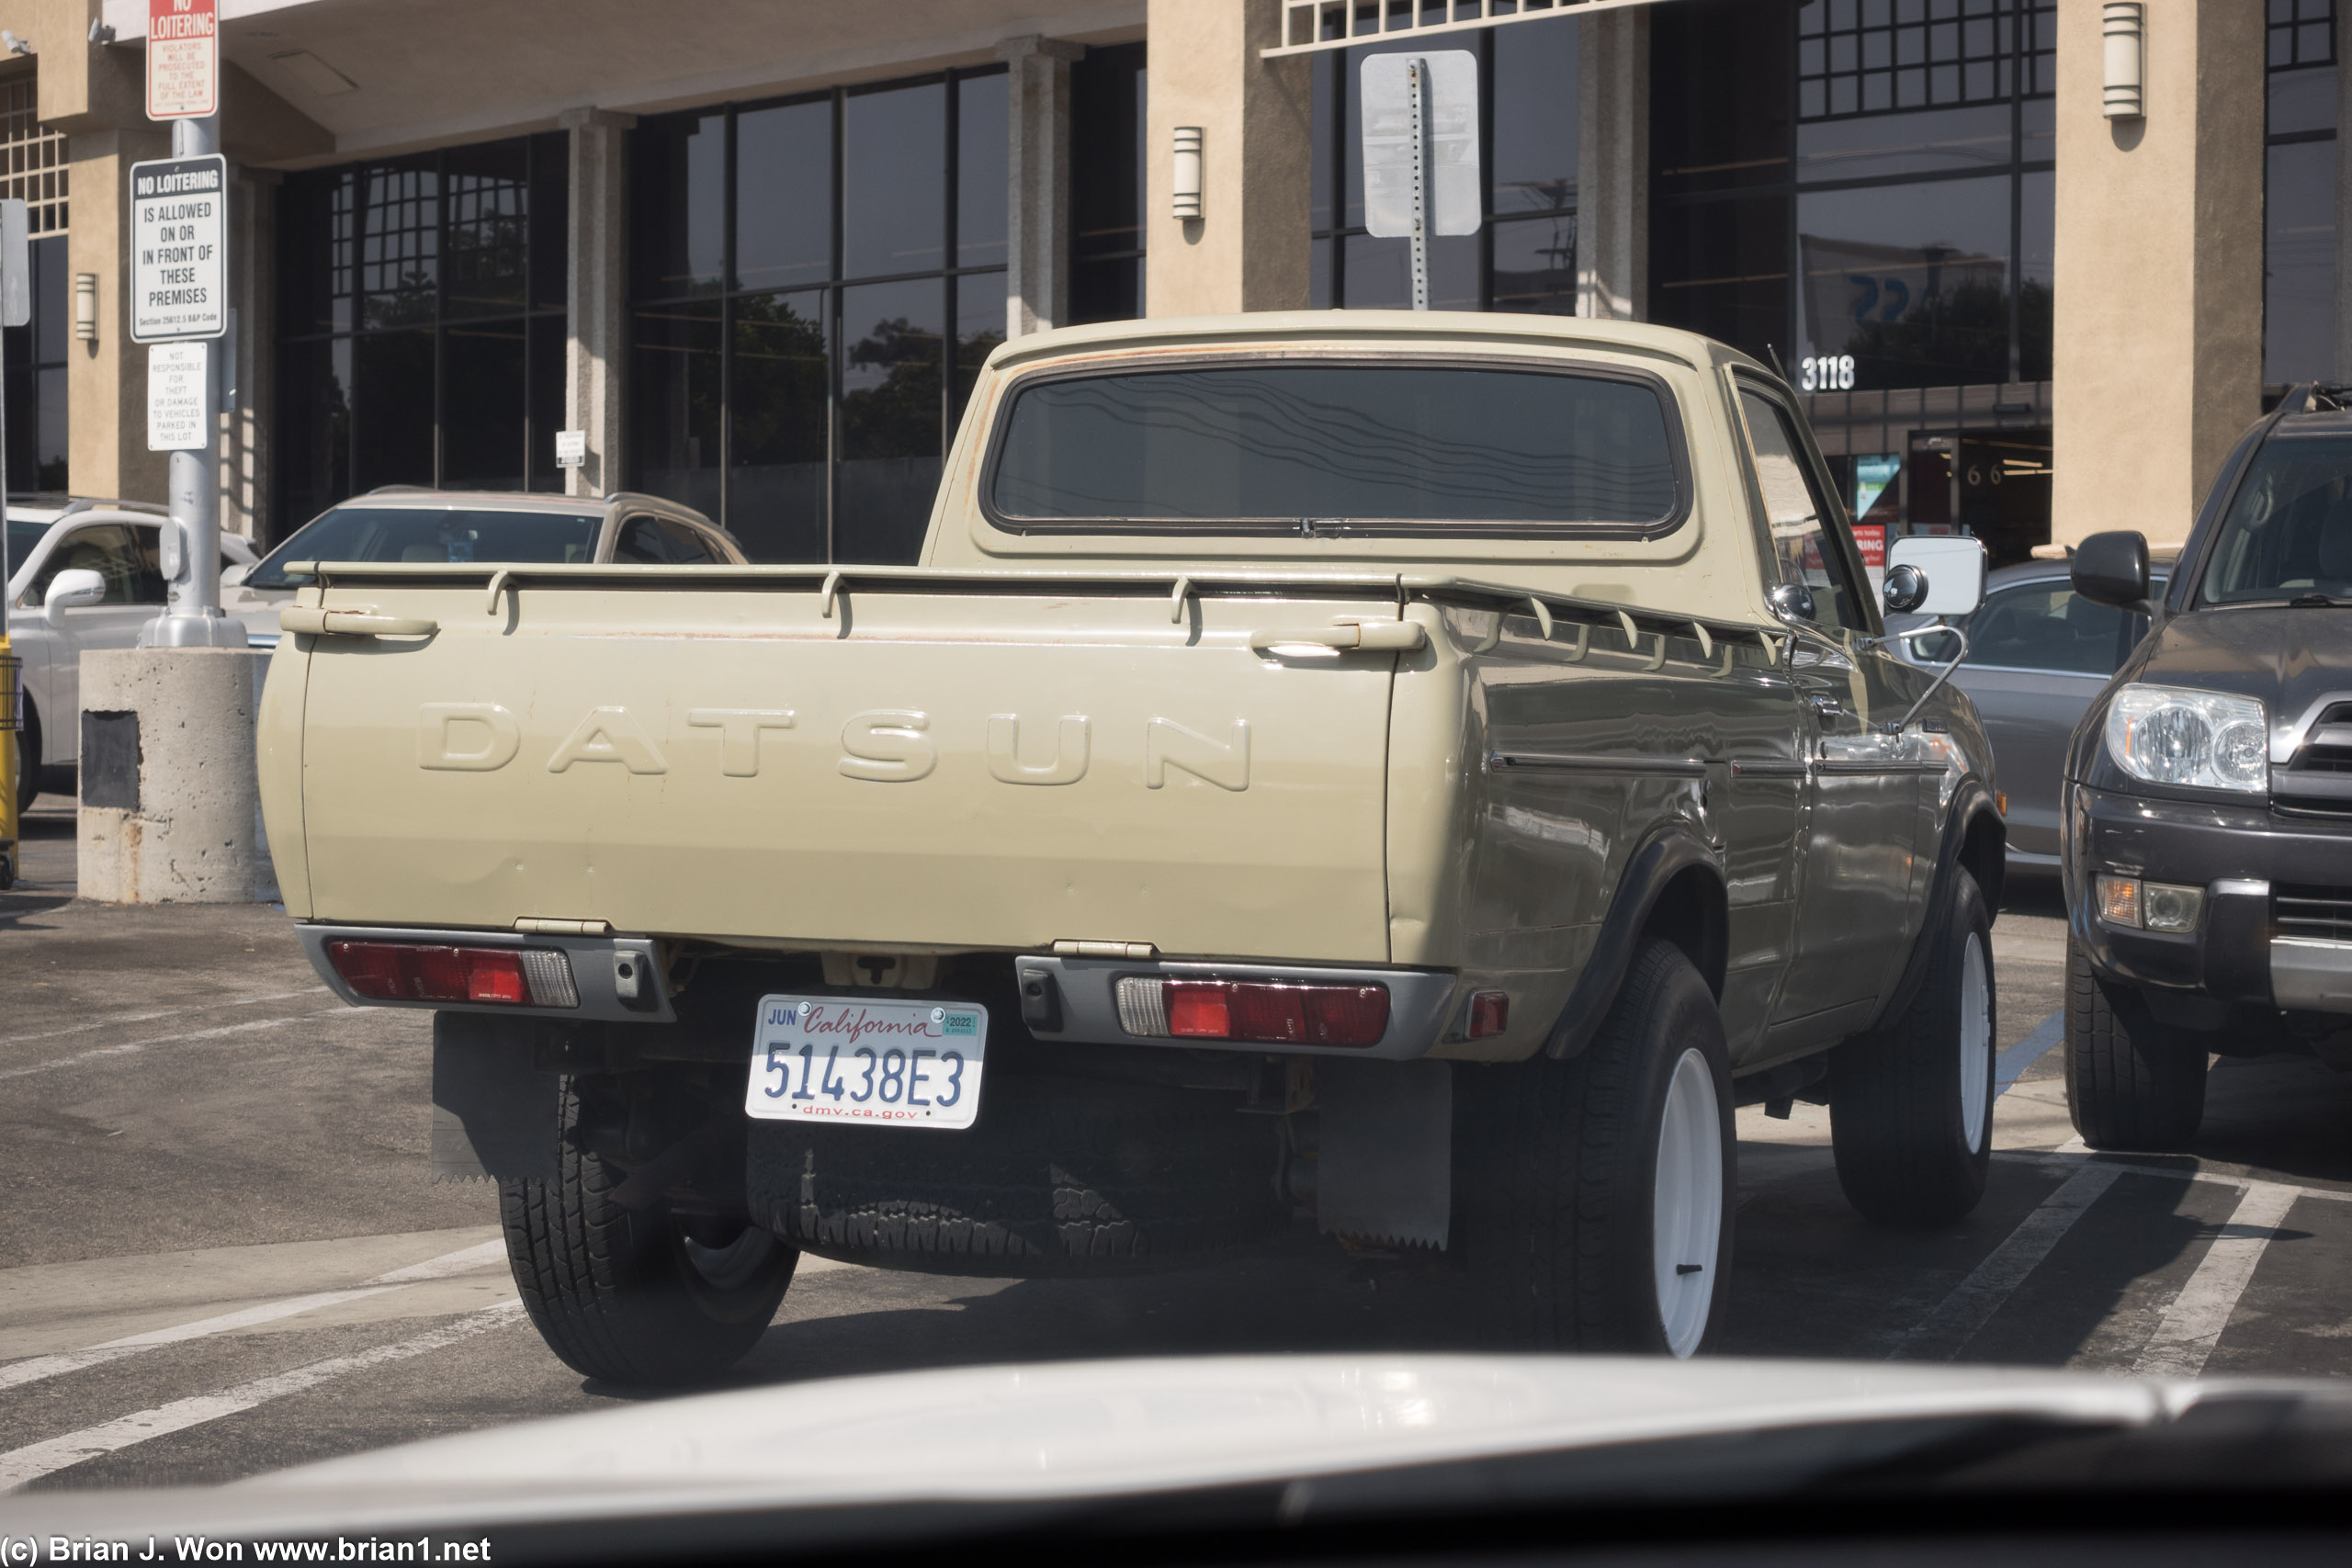 Old Datsun in great shape.